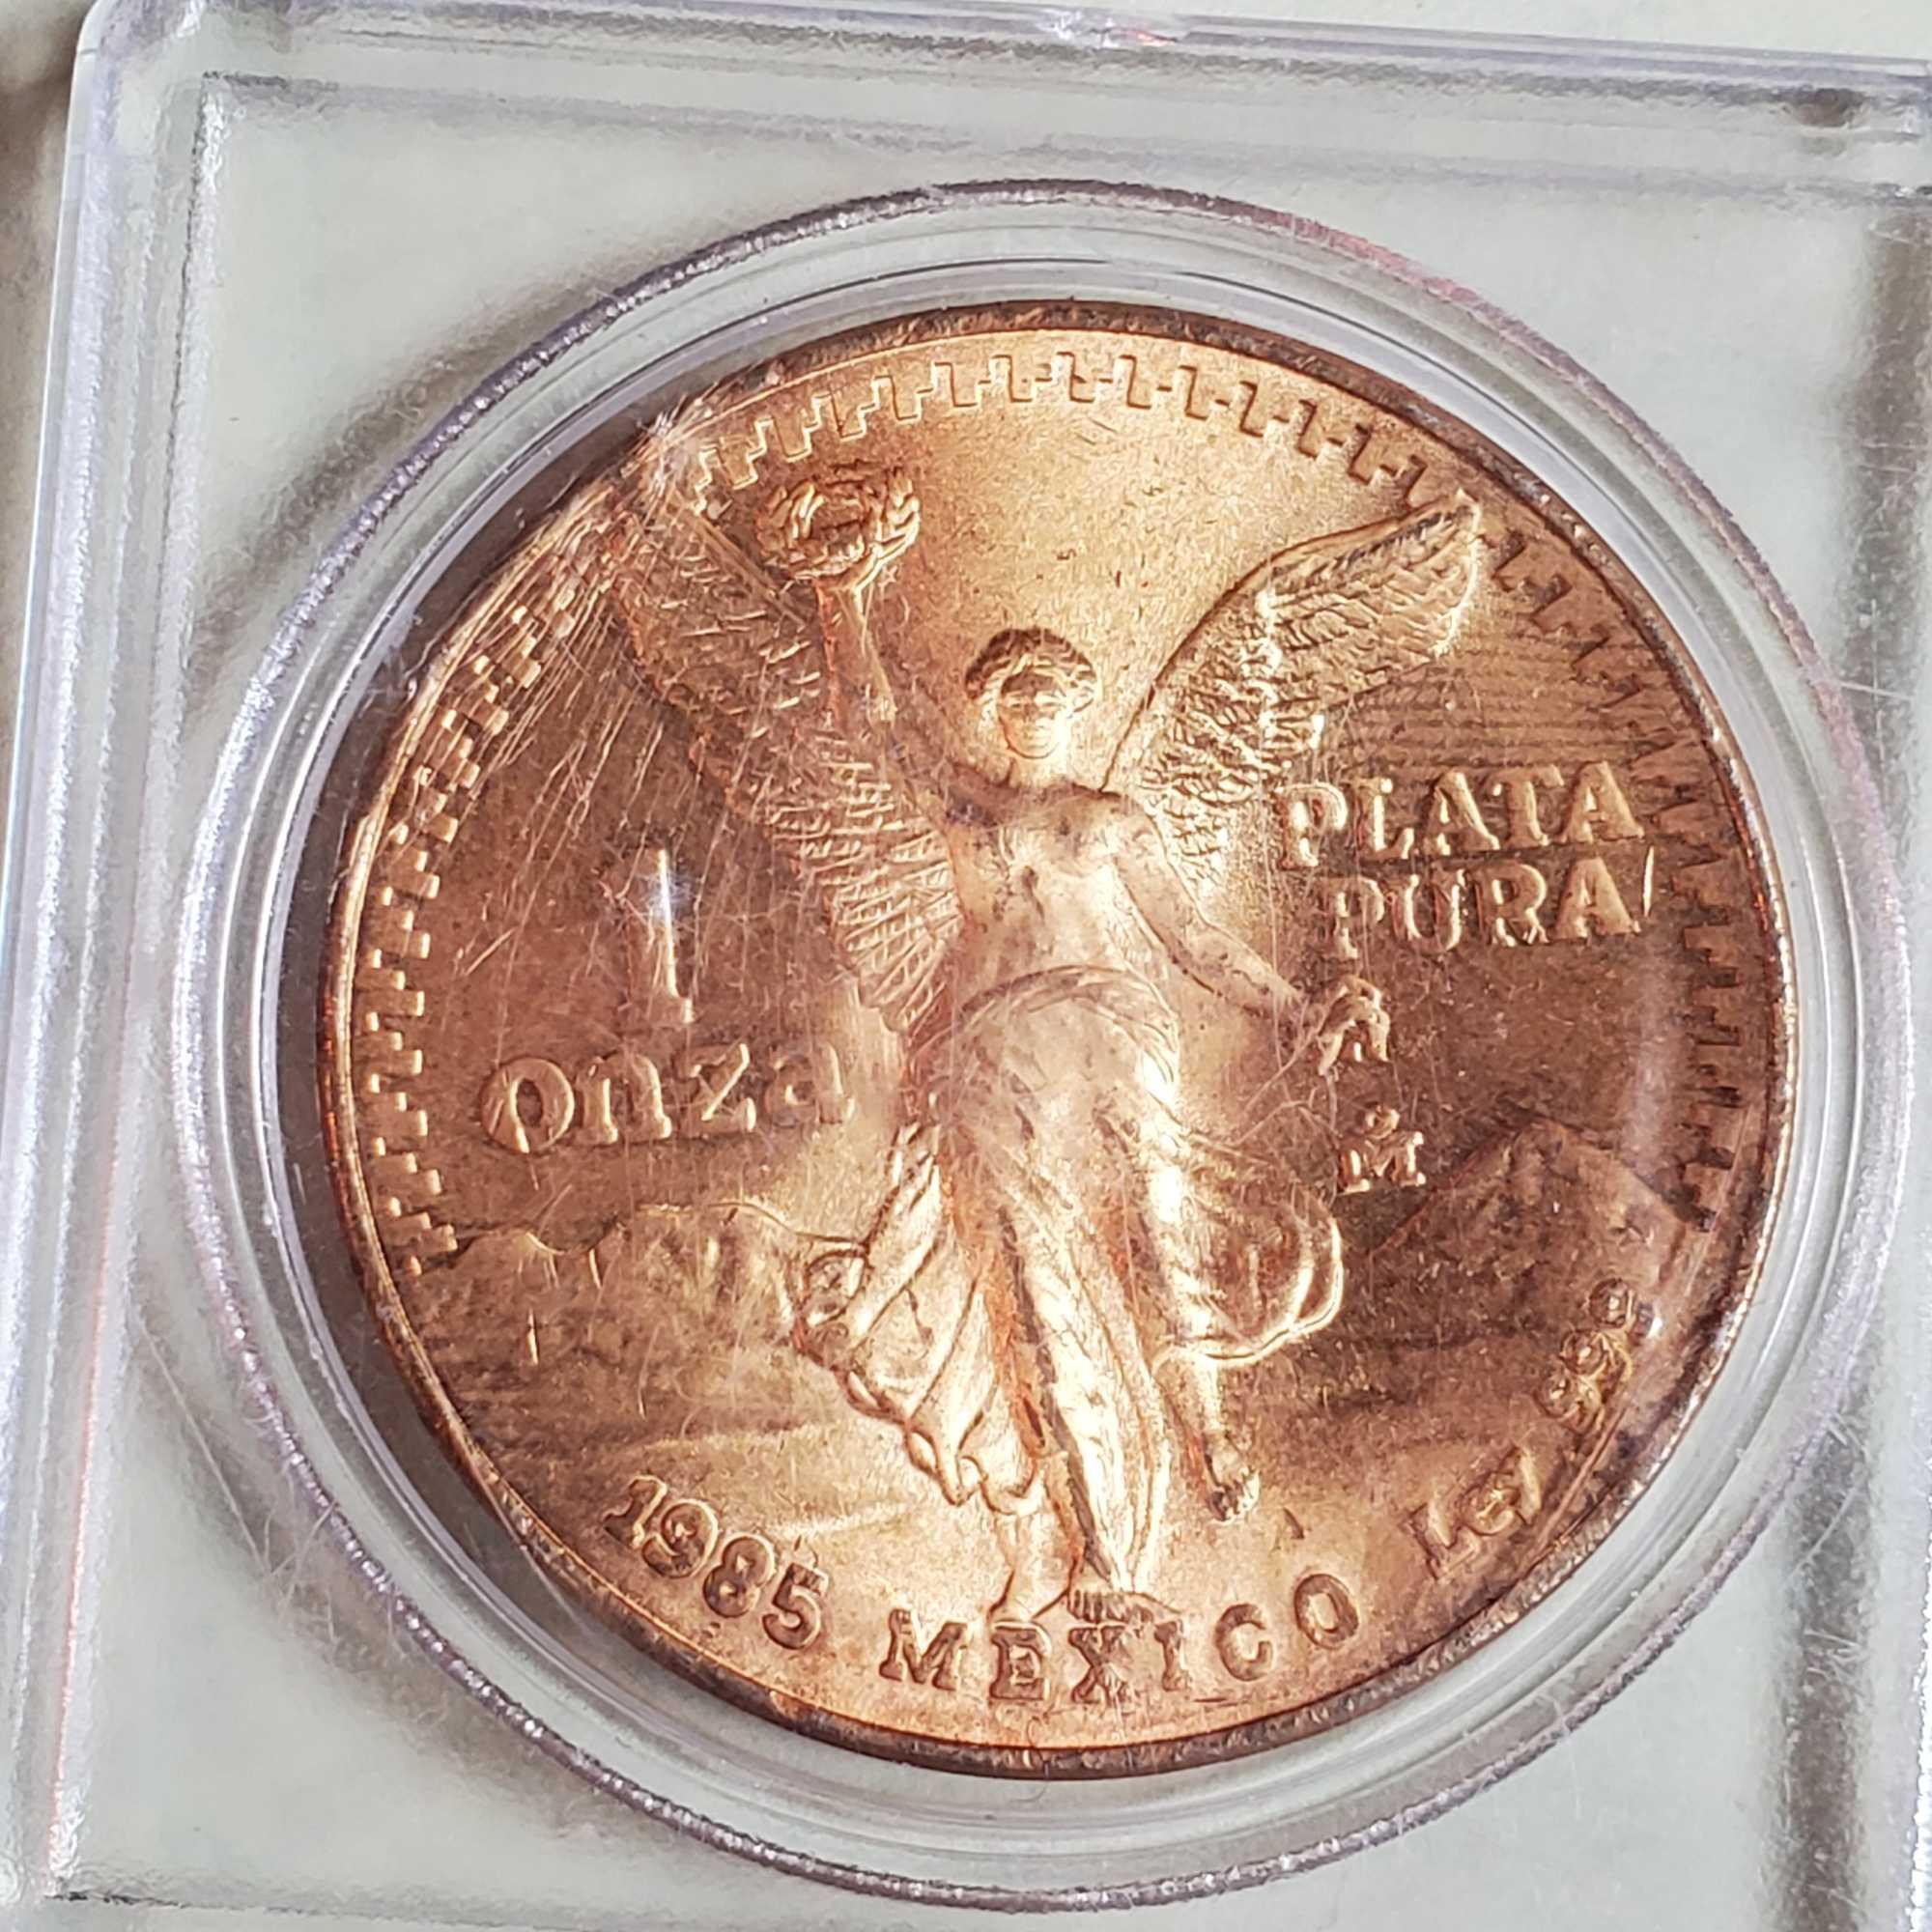 4 1985 Mexico Gold Gilded 1oz. .999 Silver Libertads